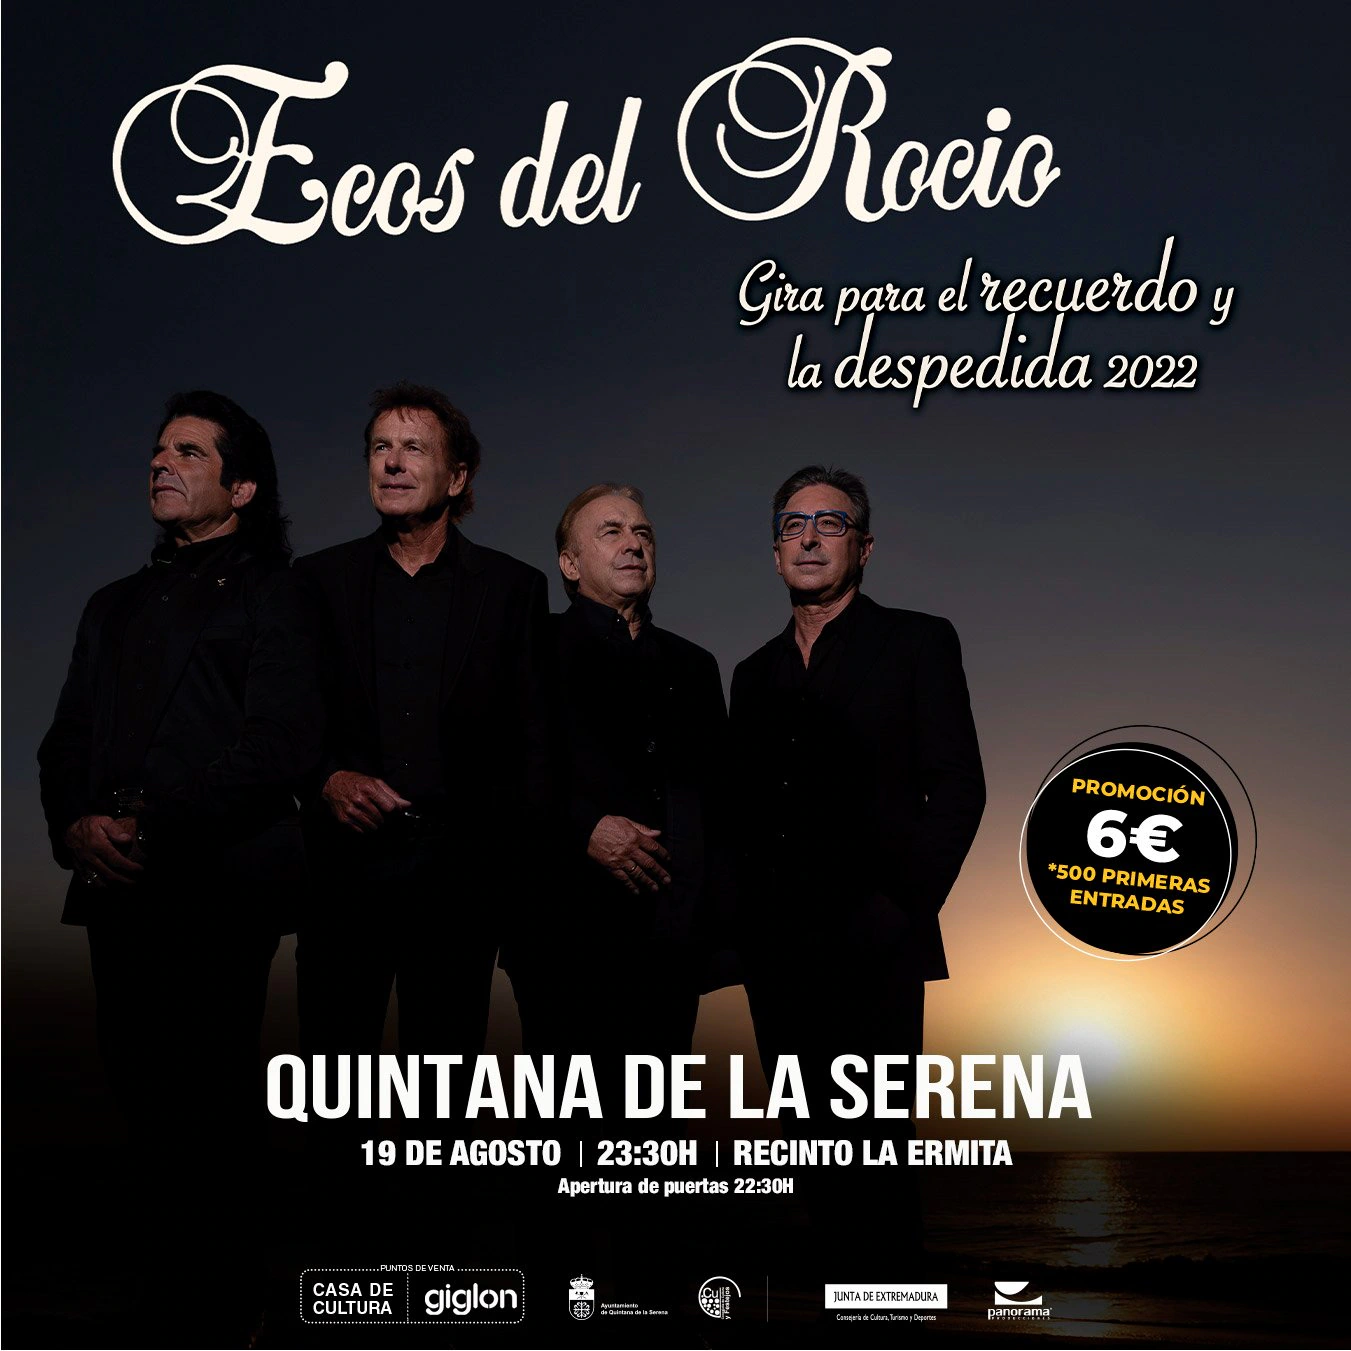 El grupo 'Ecos del Rocío' llegará a Quintana el 19 de agosto en su gira de despedida